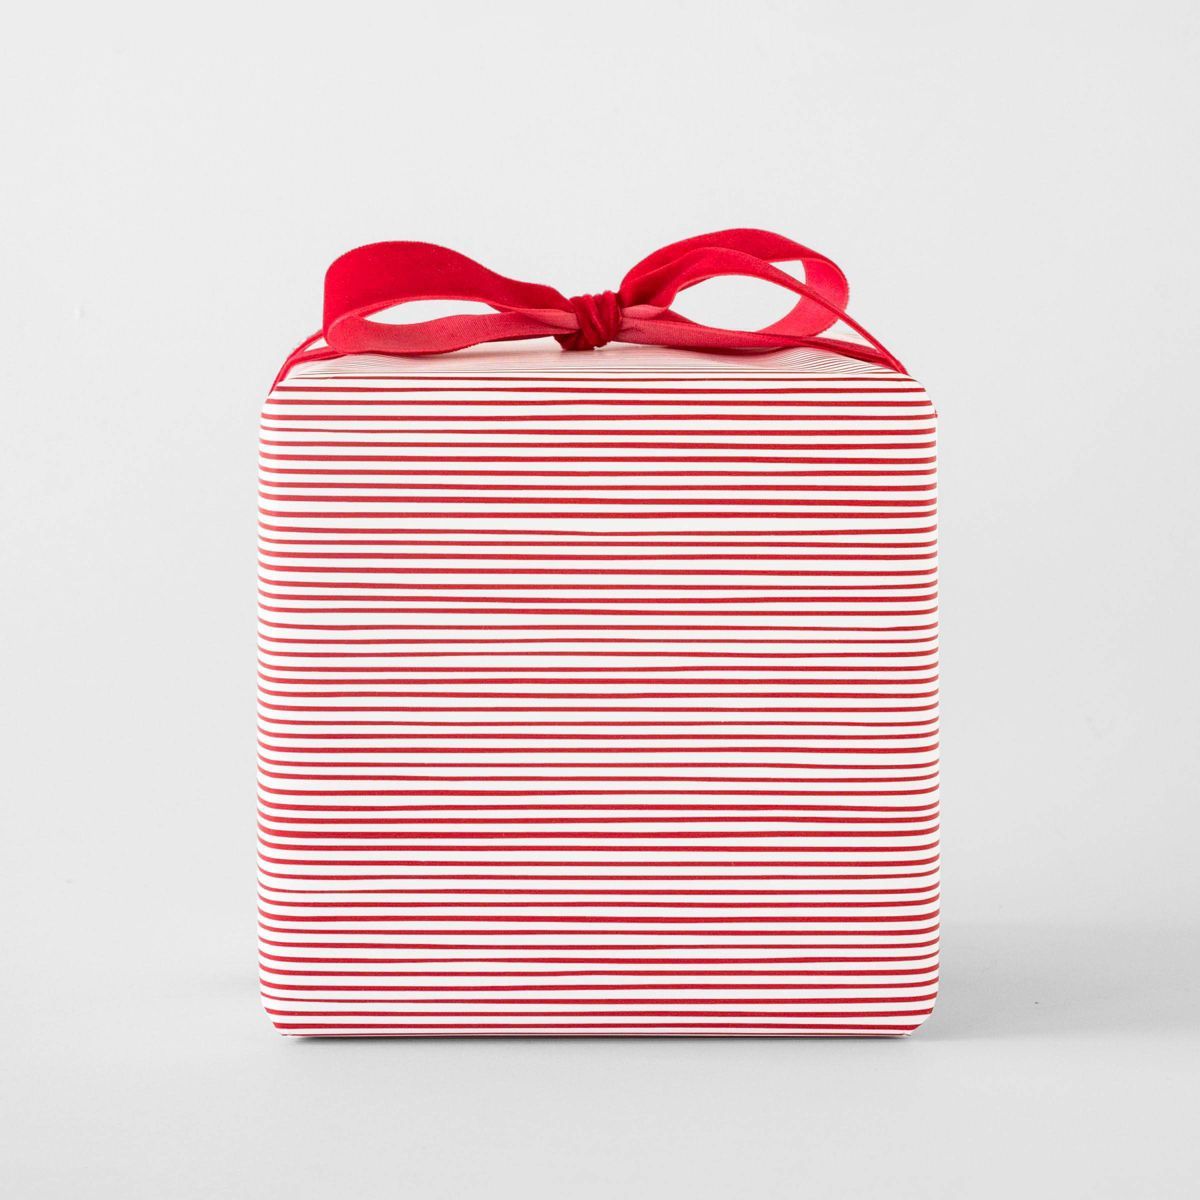 25 sq ft Thin Stripe Gift Wrap White Red/White - Sugar Paper™ + Target | Target